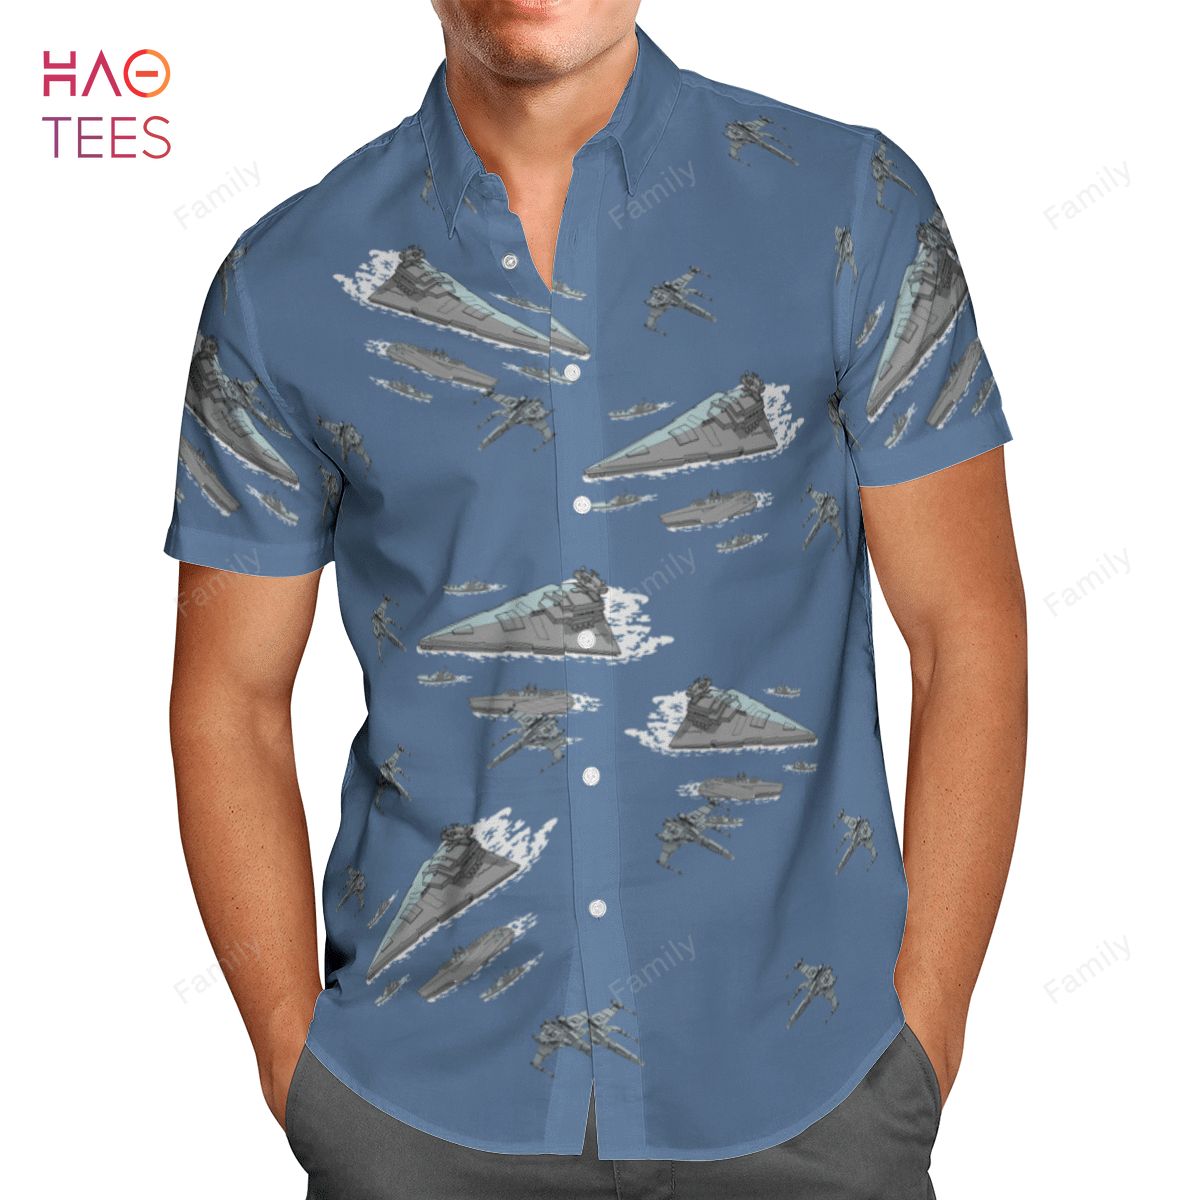 Star Wars AOP Hawaiian Shirt